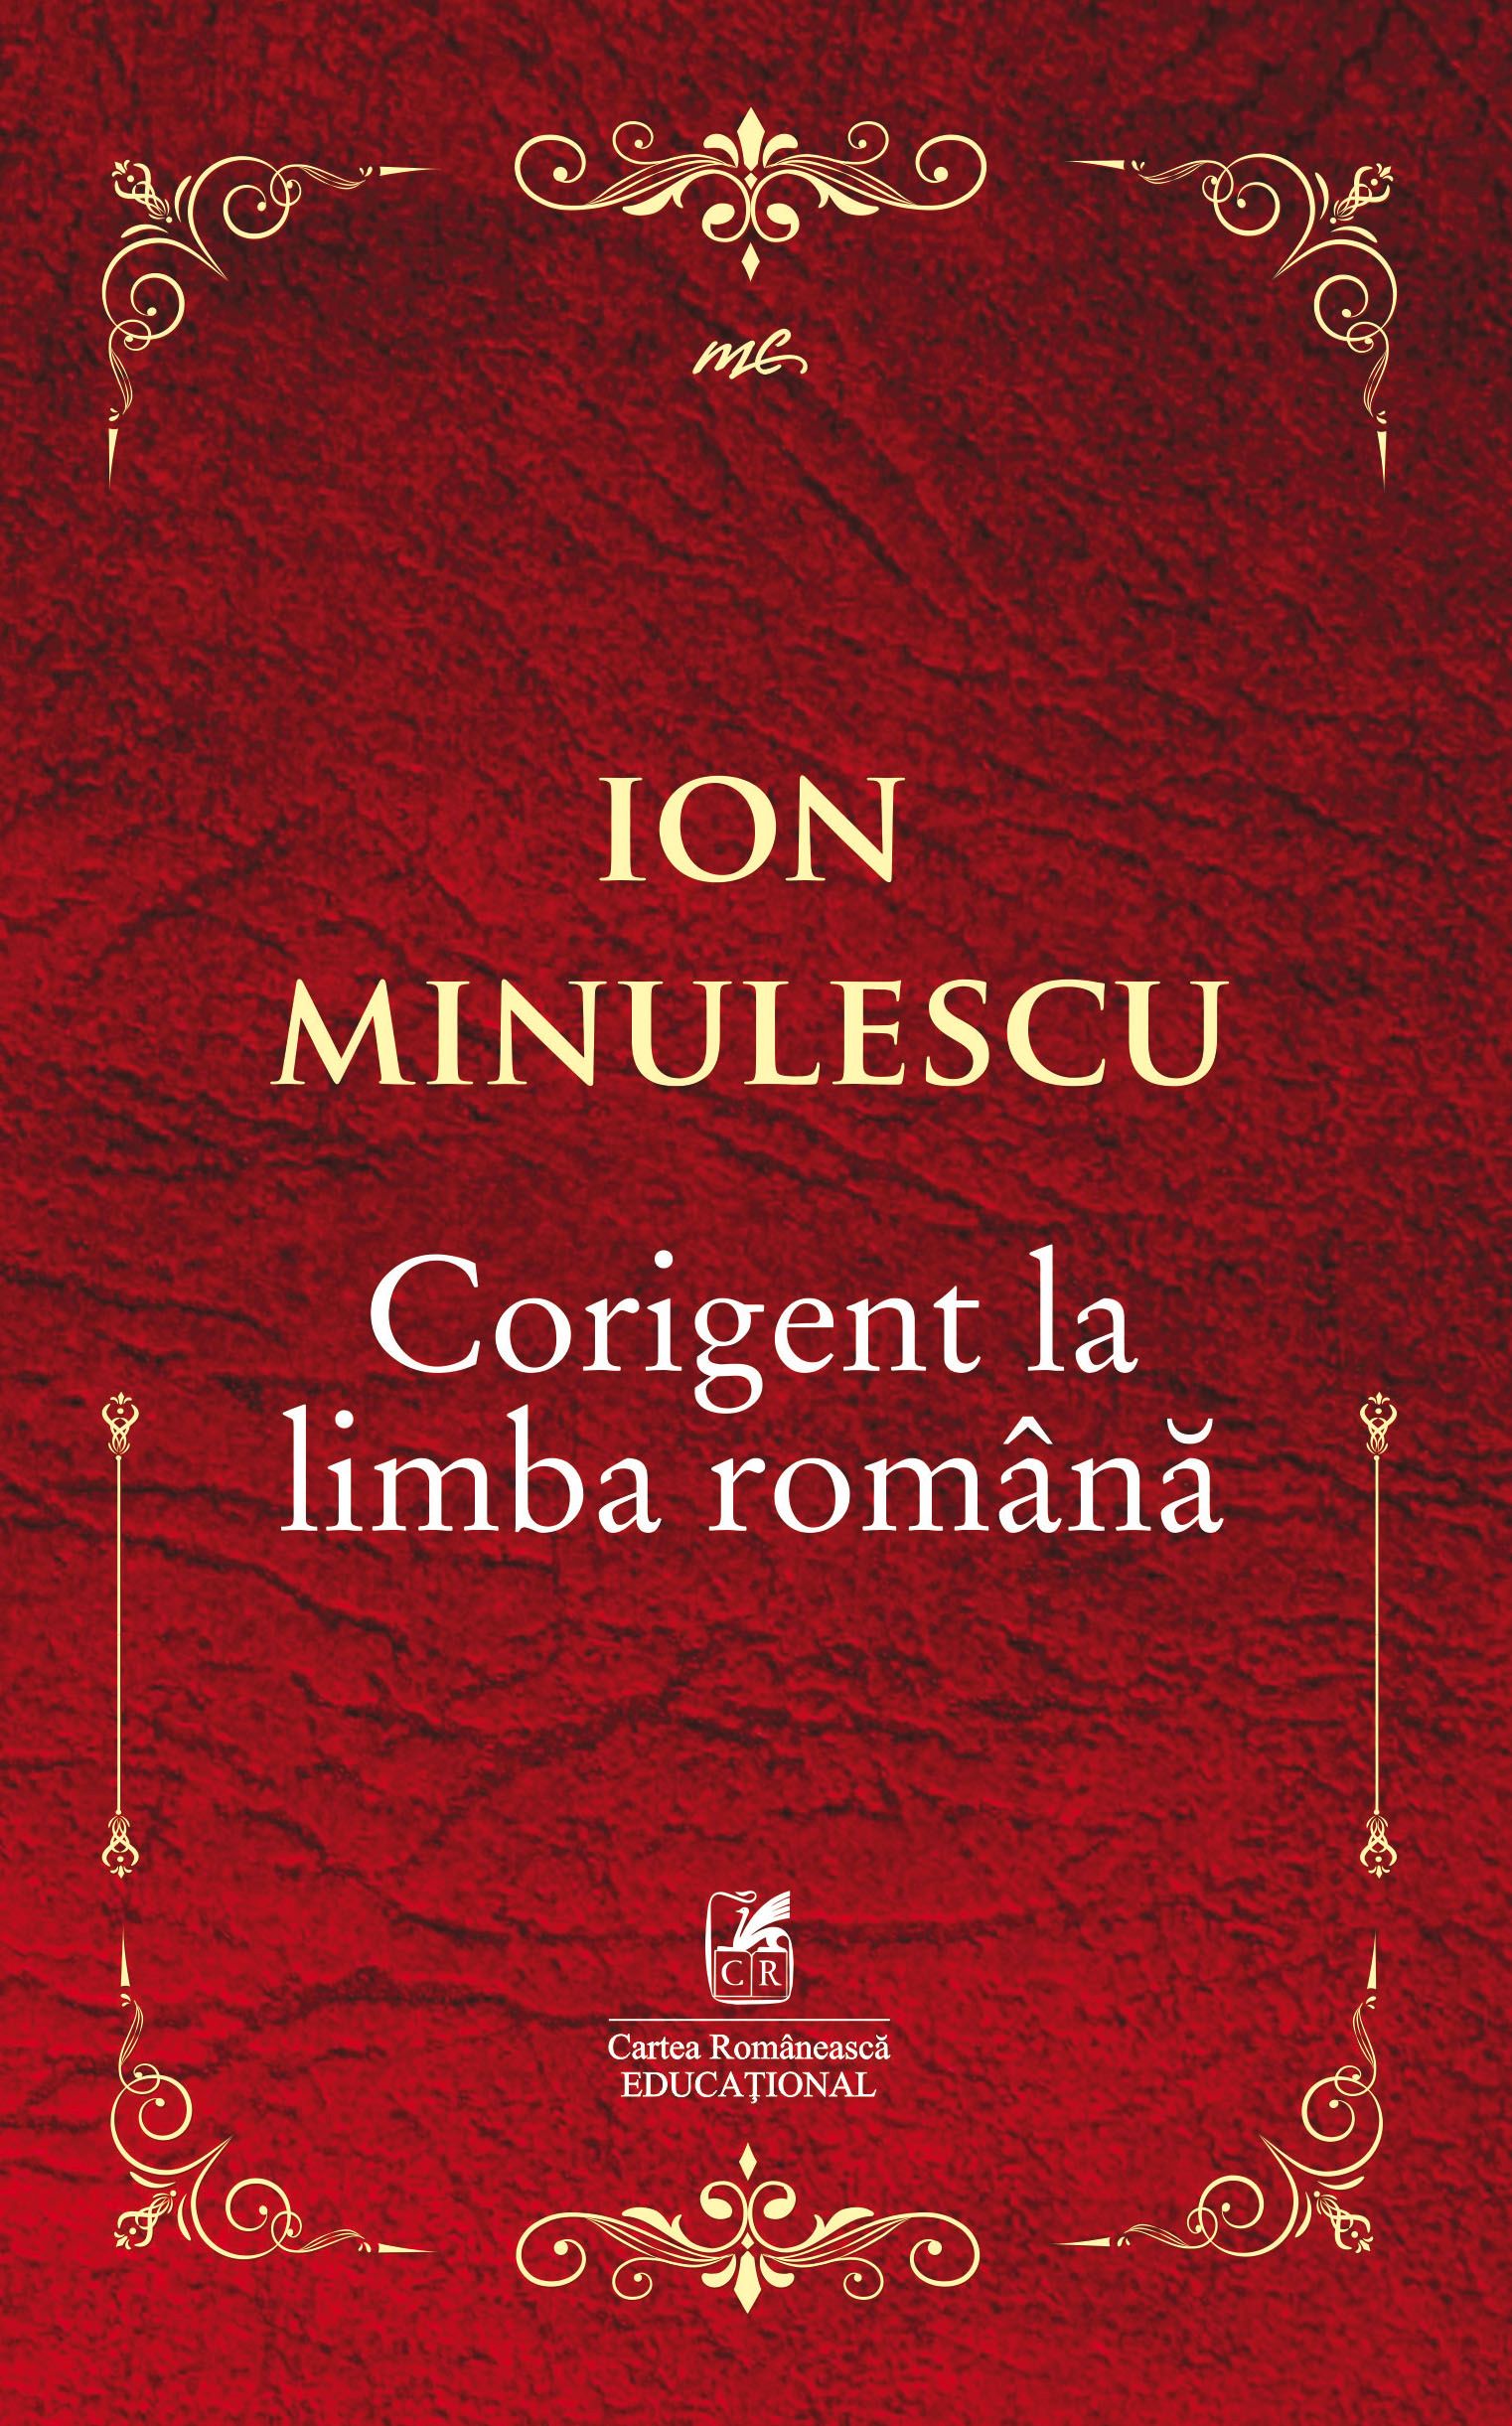 Corigent la limba romana | Ion Minulescu Cartea Romaneasca educational Bibliografie scolara